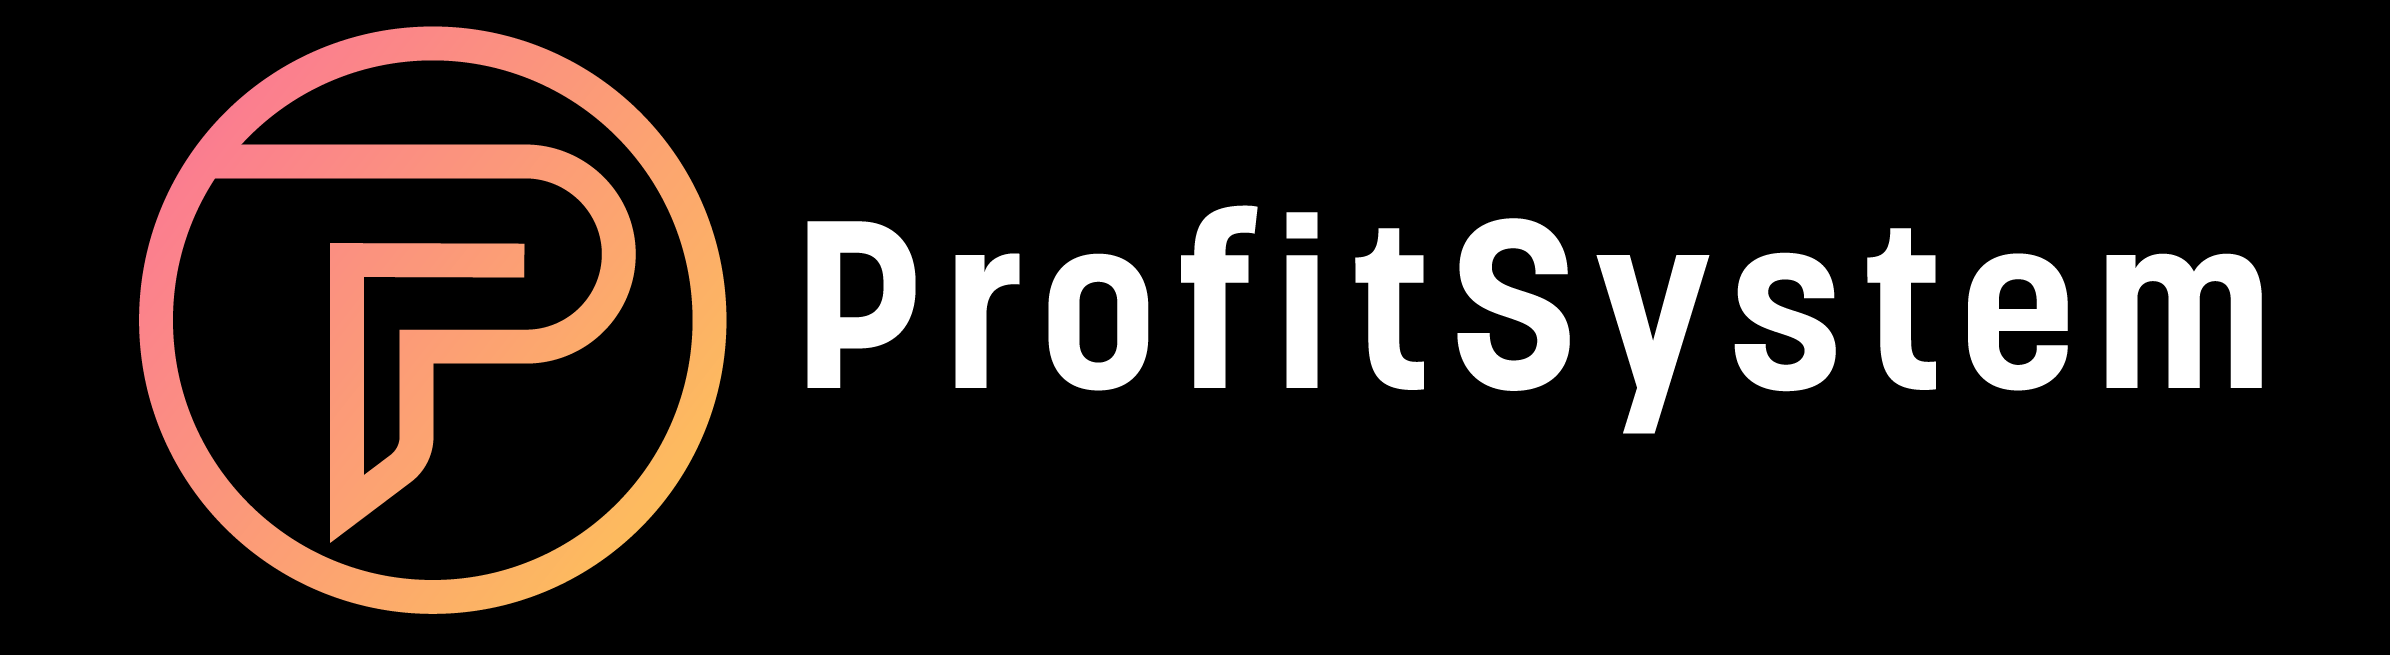 ProfitSystem-Cropped